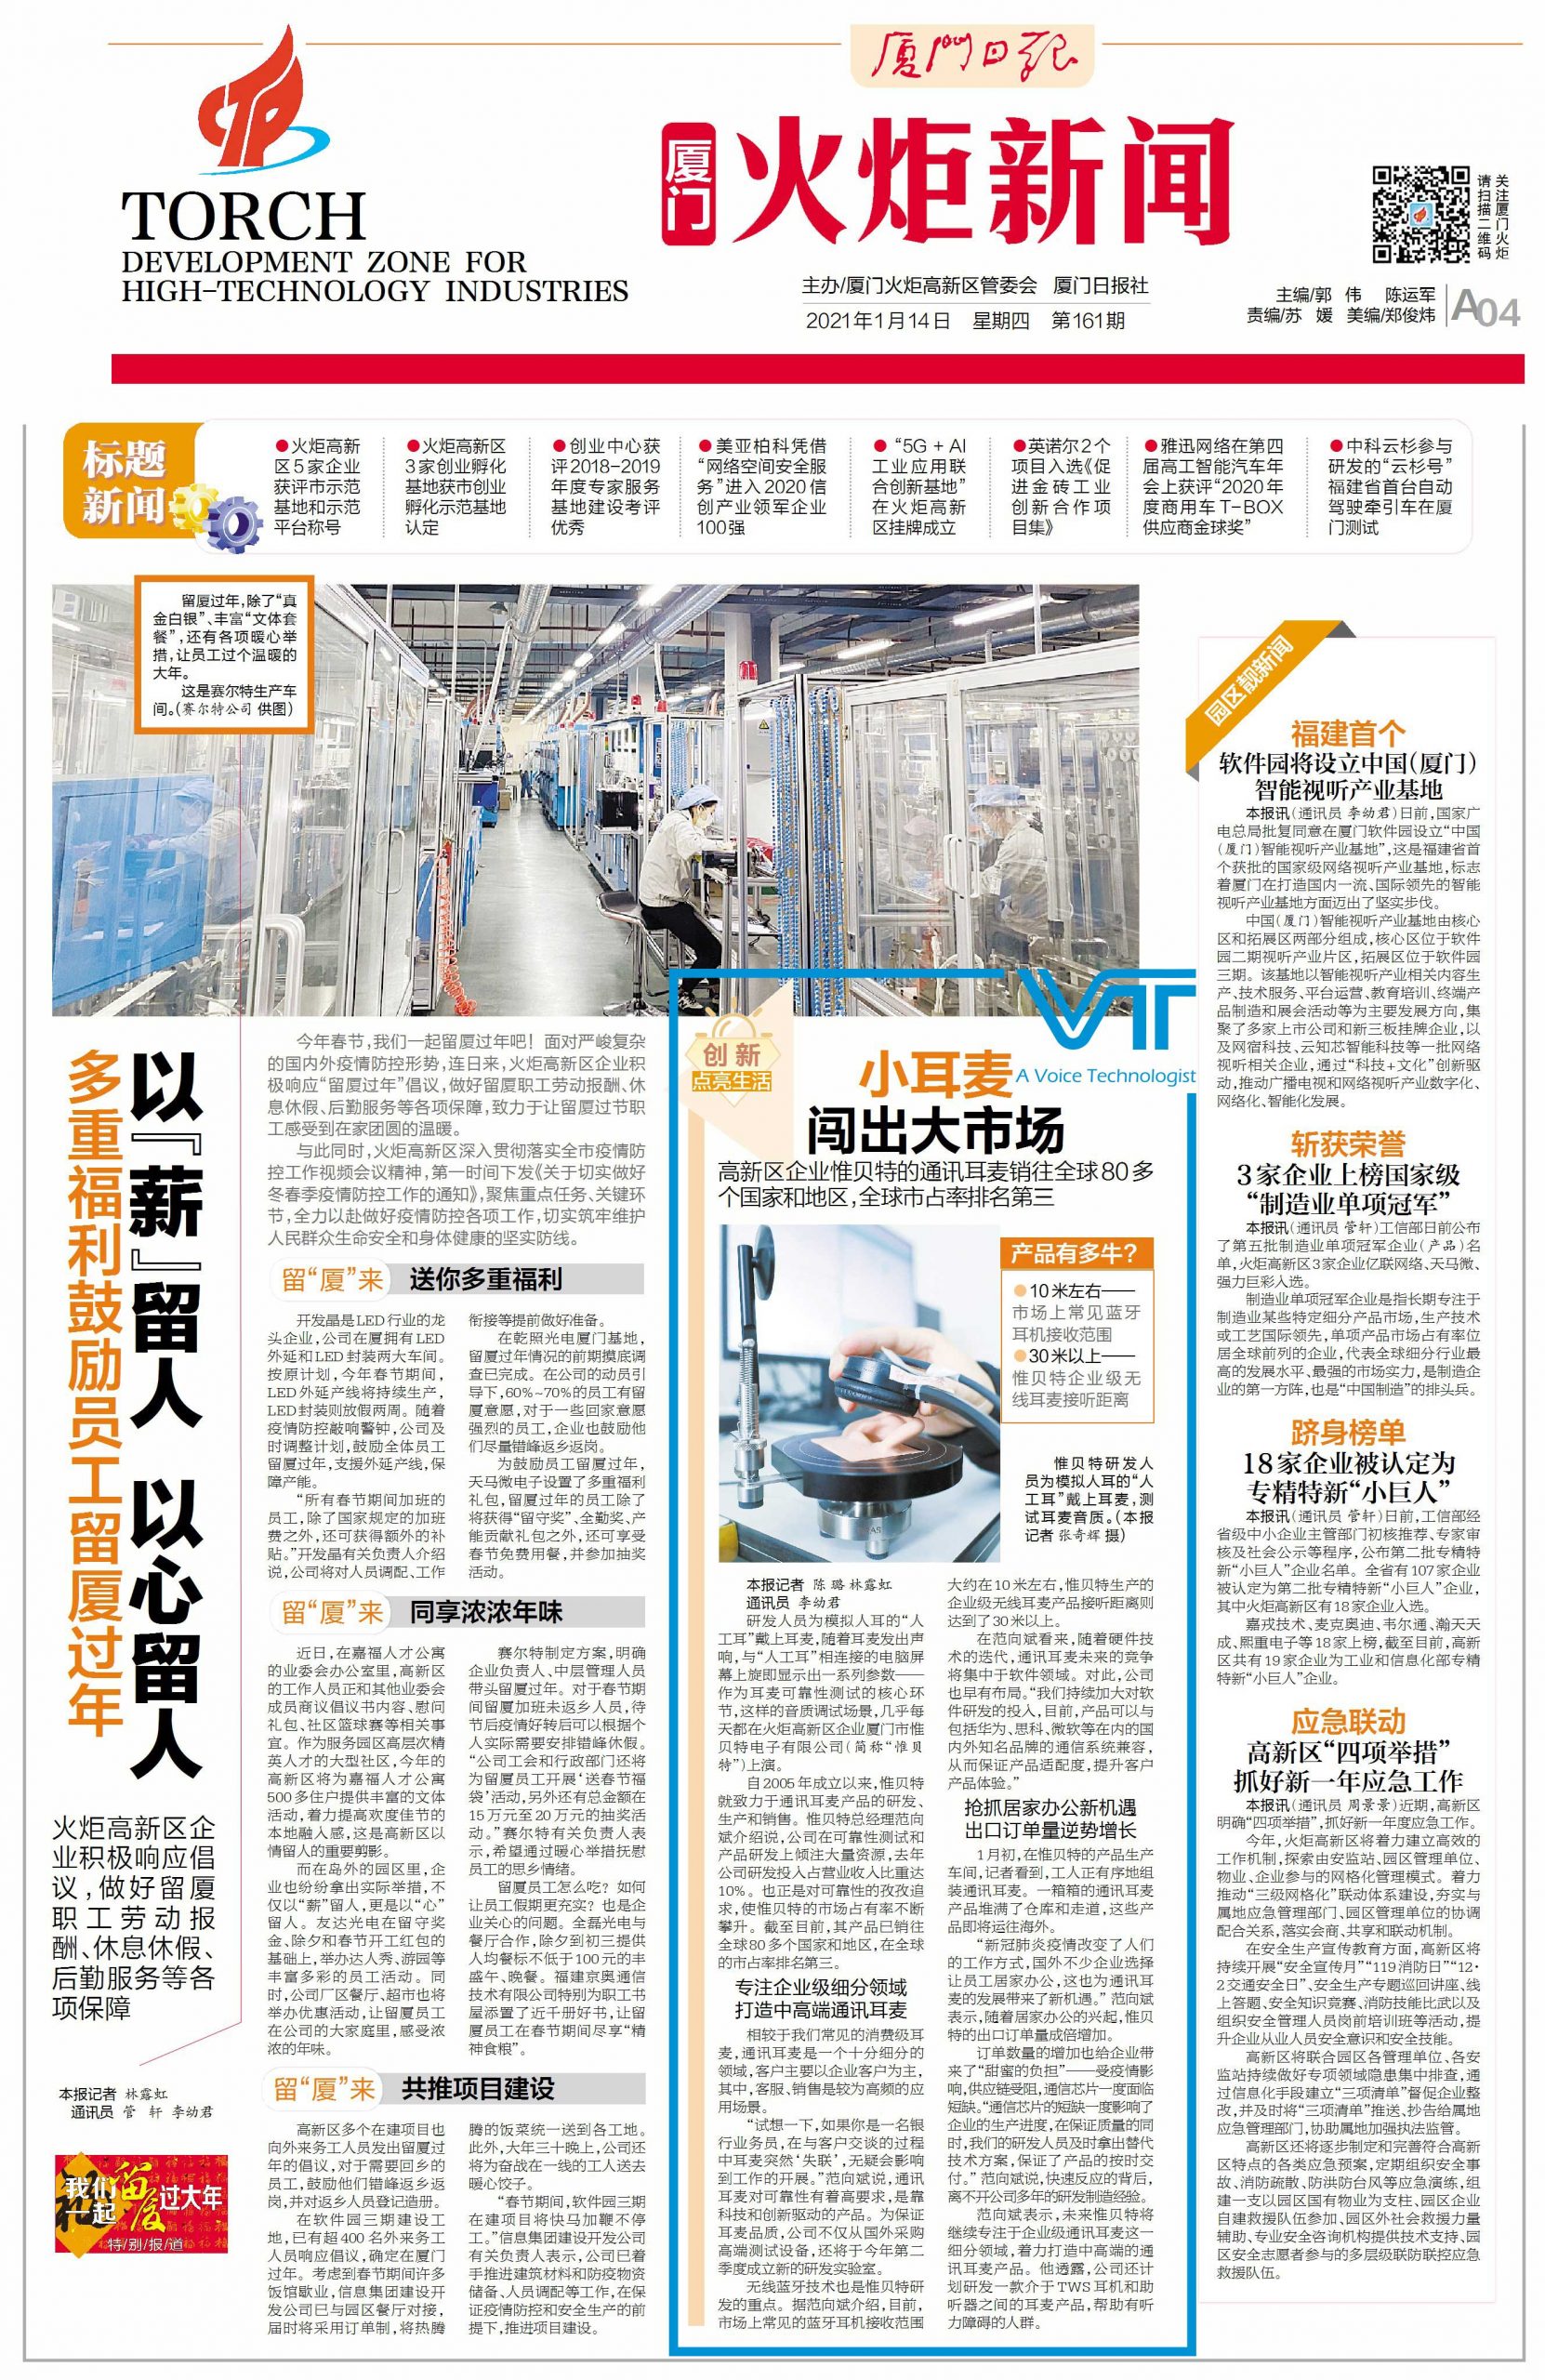 L'histoire de Flash News-VT a été publiée sur les principales plates-formes chinoises du réseau !